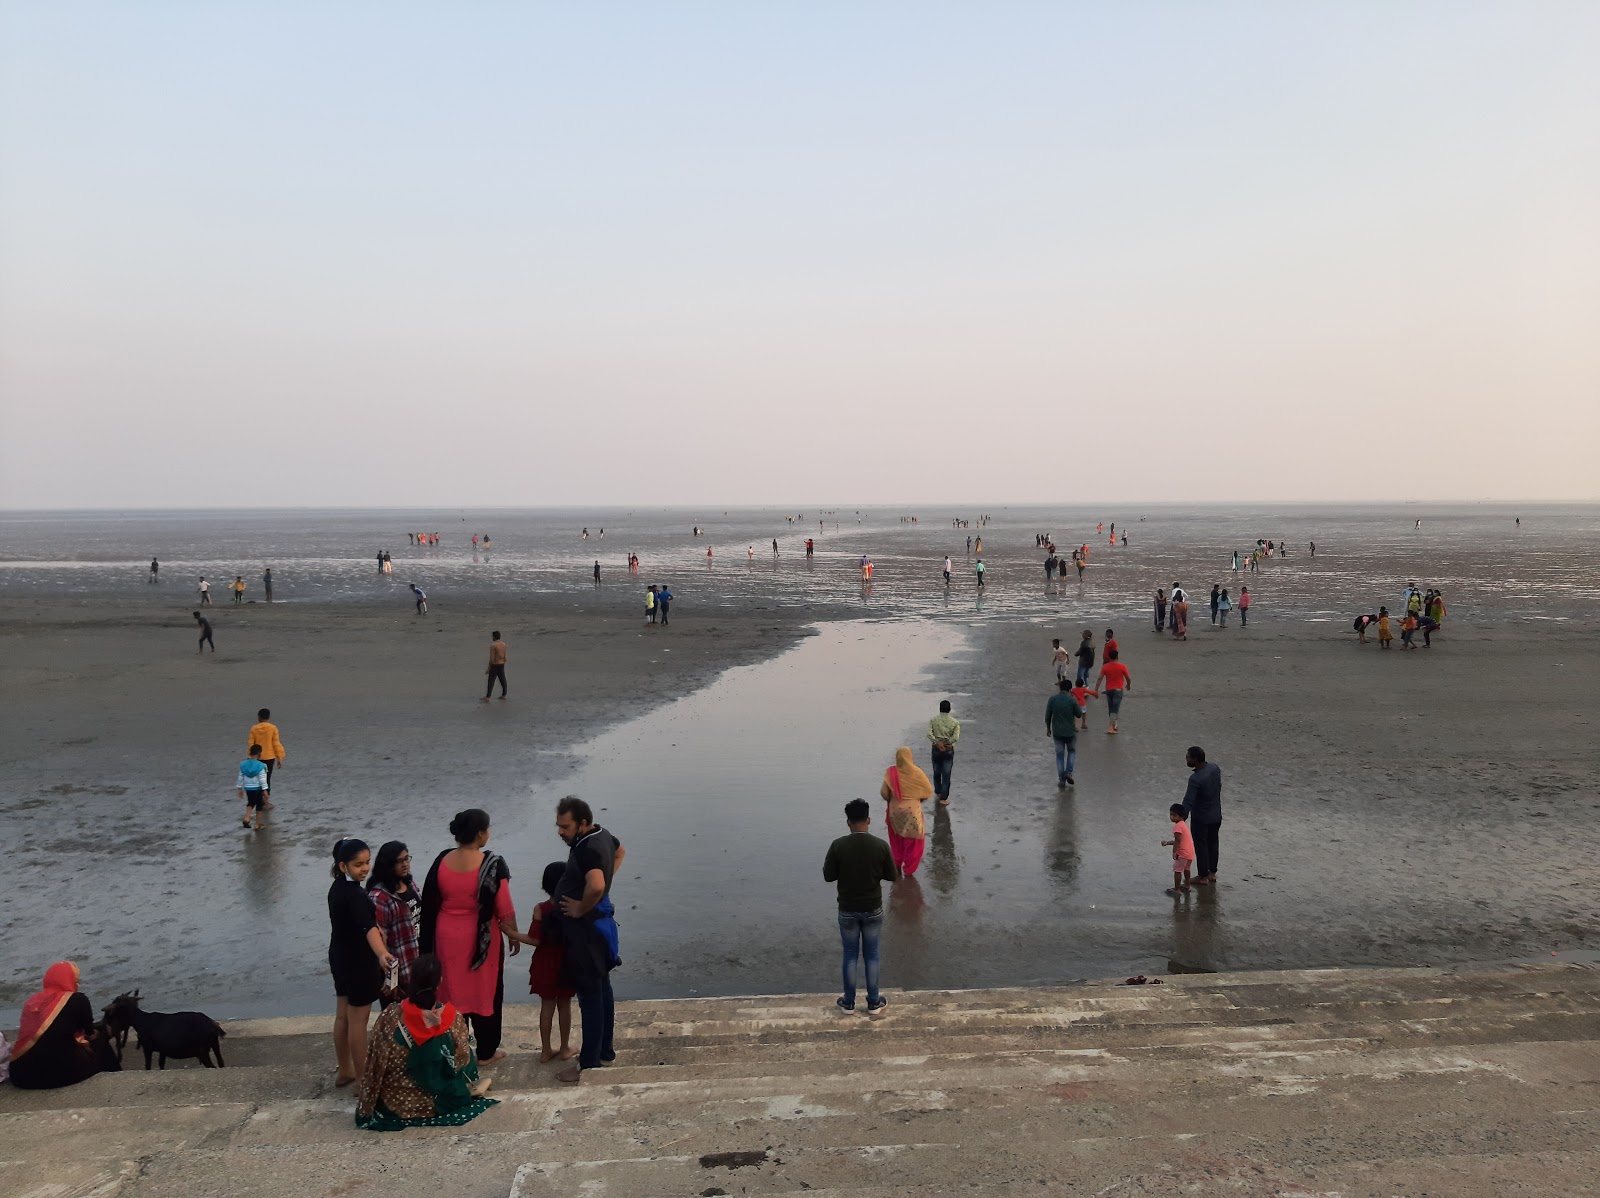 Fotografie cu Chandipur Beach cu o suprafață de nisip strălucitor